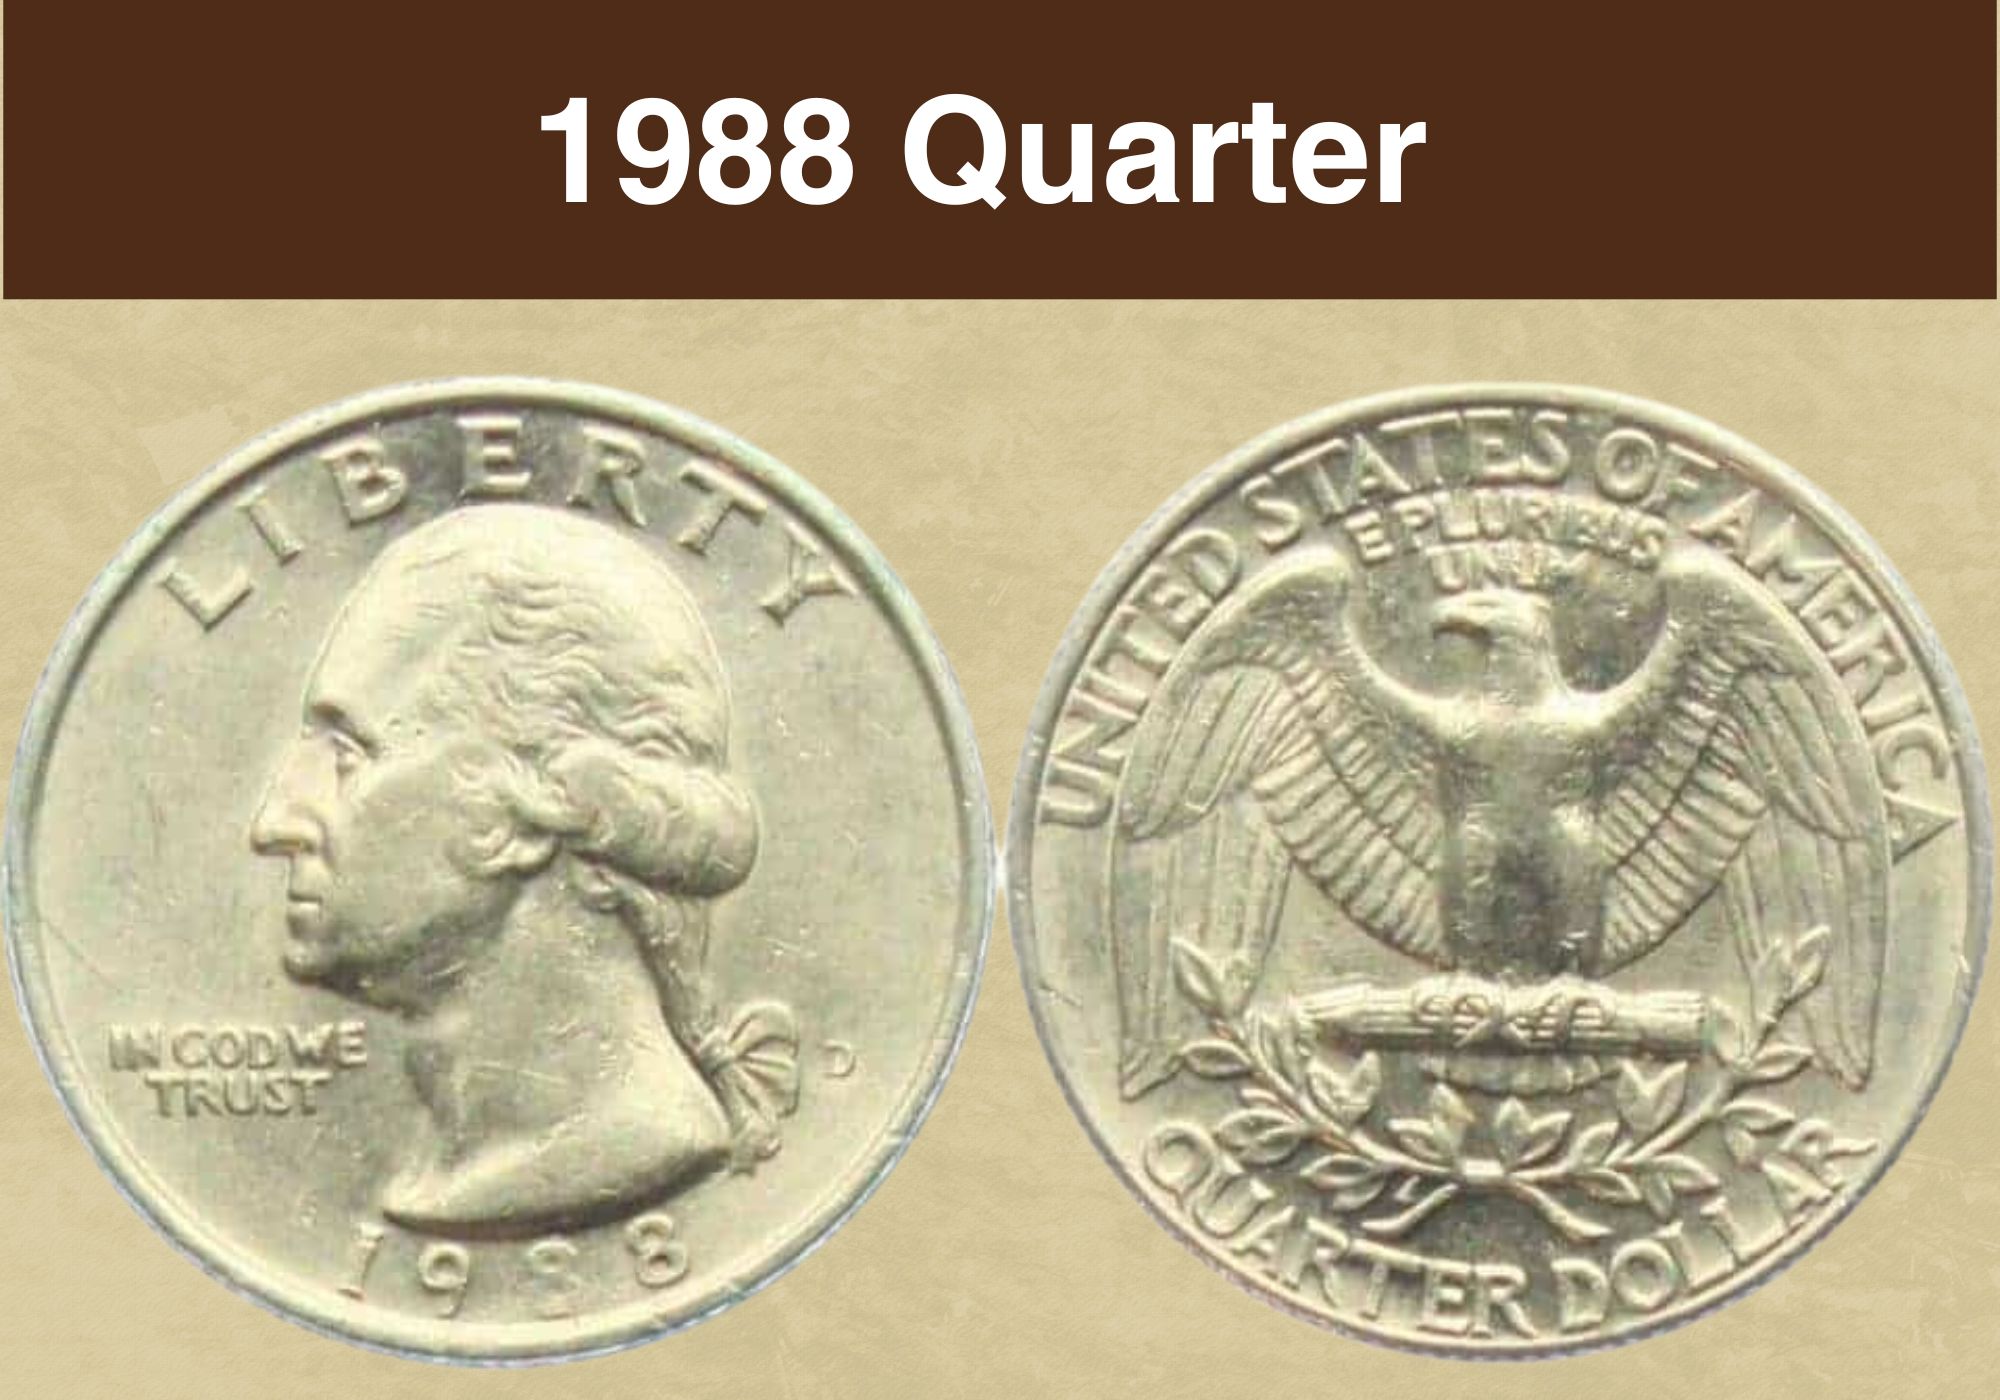 1988 Quarter Value